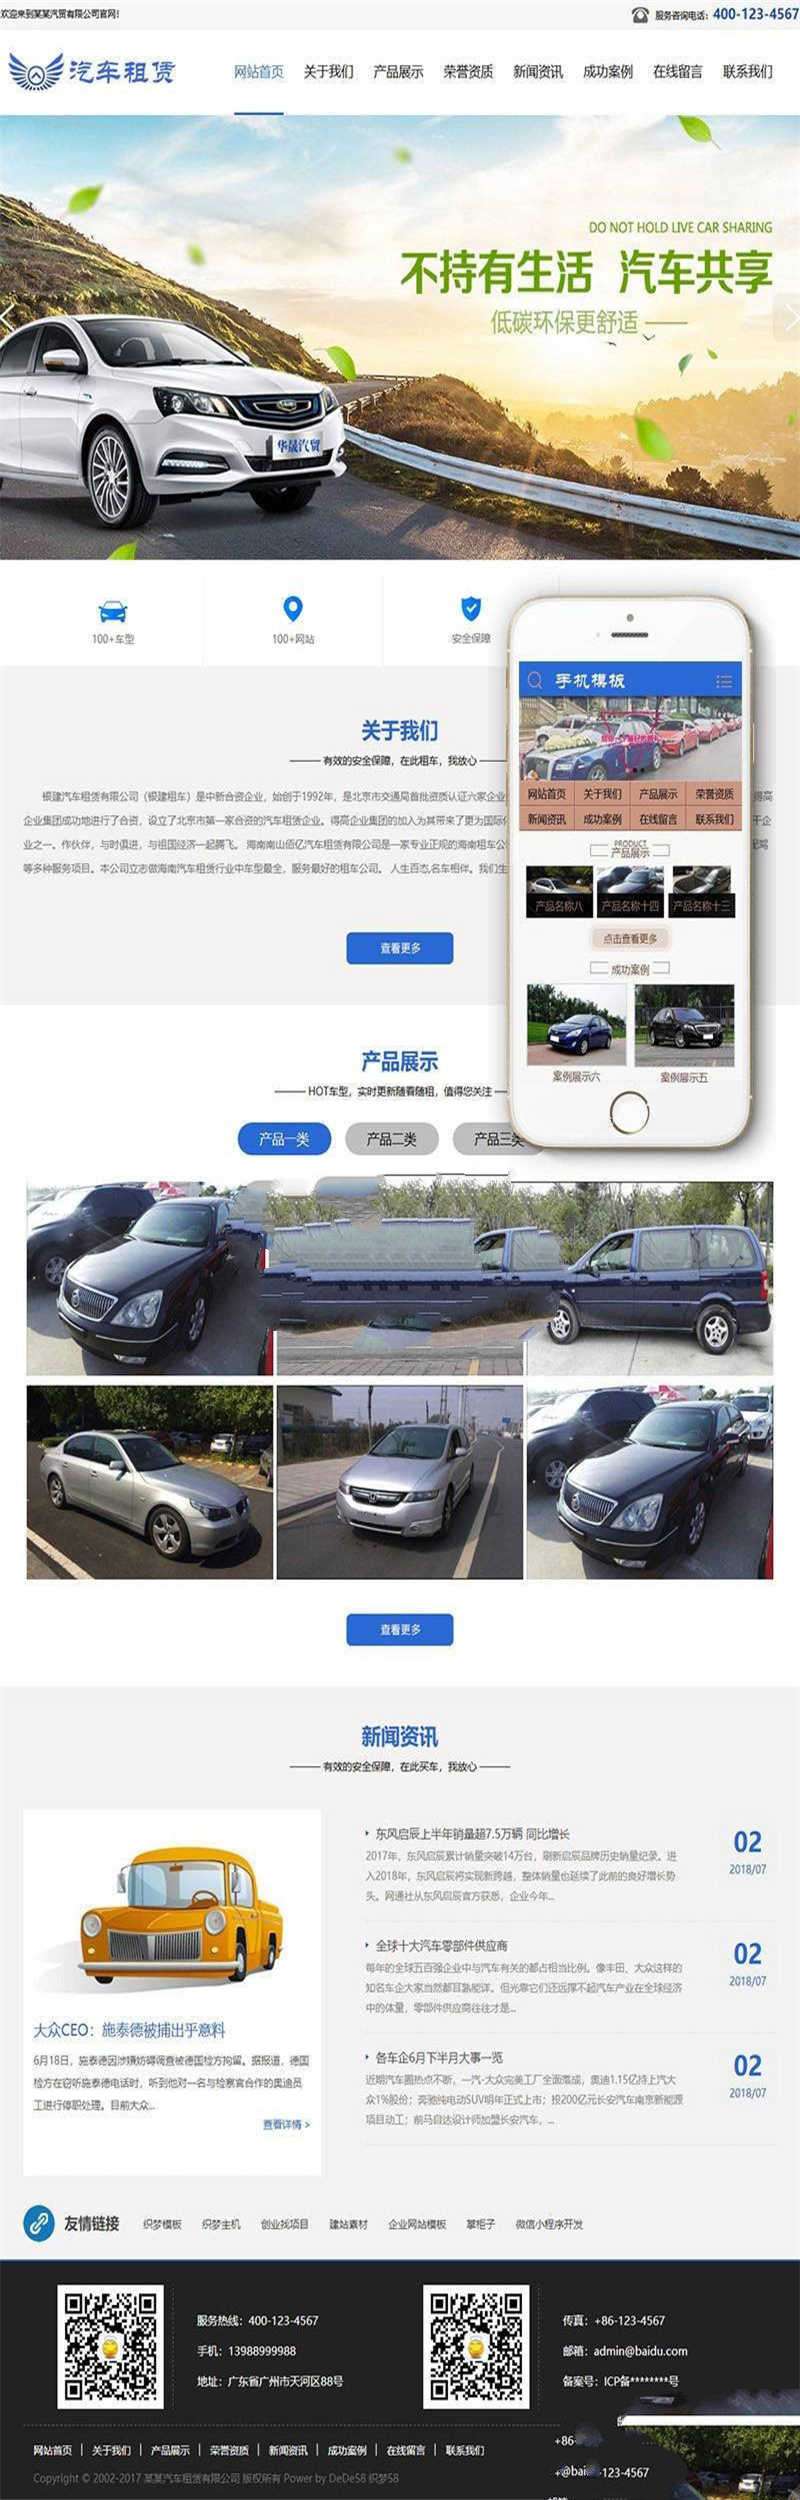 [企业源码]织梦dedecms汽车租赁贸易企业网站模板GBK(带手机移动端)插图